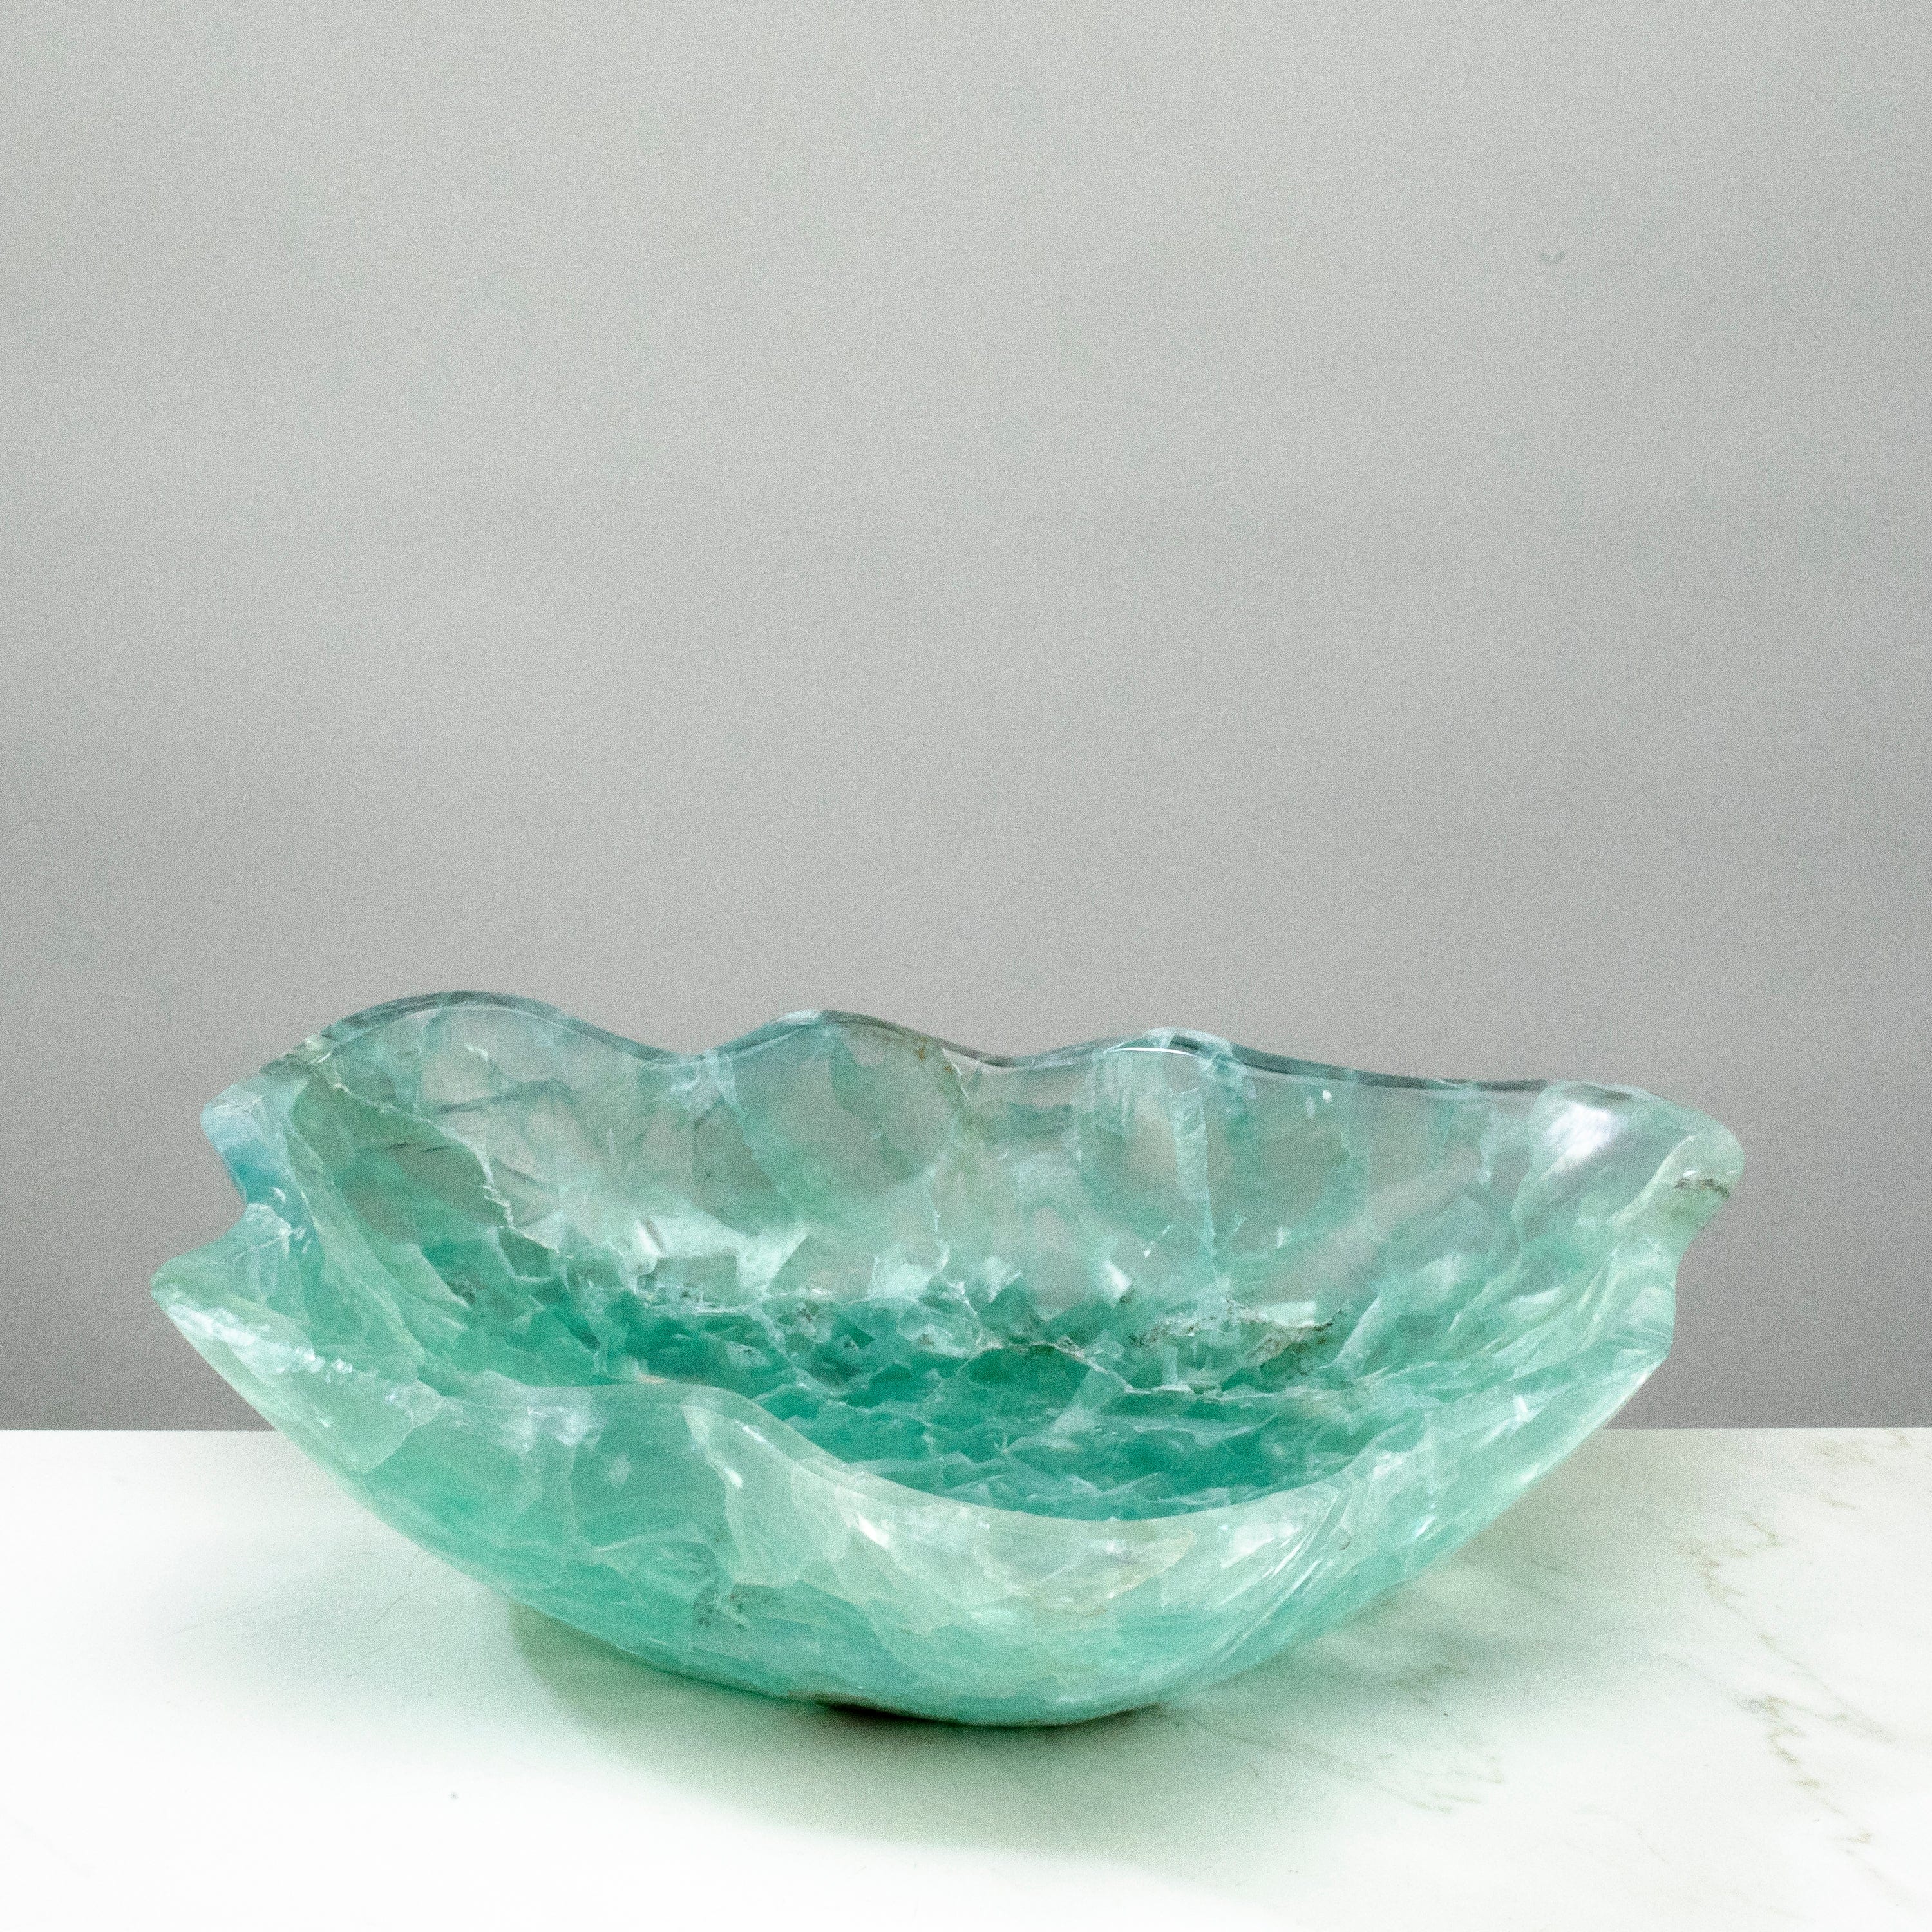 KALIFANO Gemstone Bowls Natural Blue / Green Fluorite Bowl 13.5" BFL7200.002